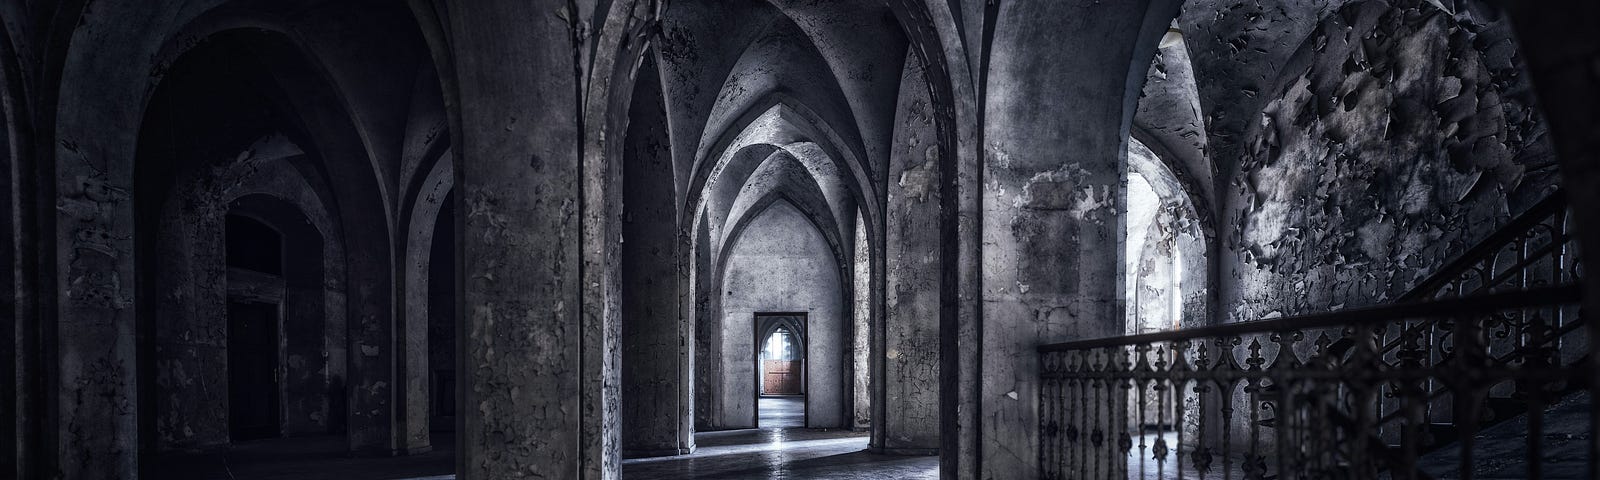 Archways in a shadowy building, gothic